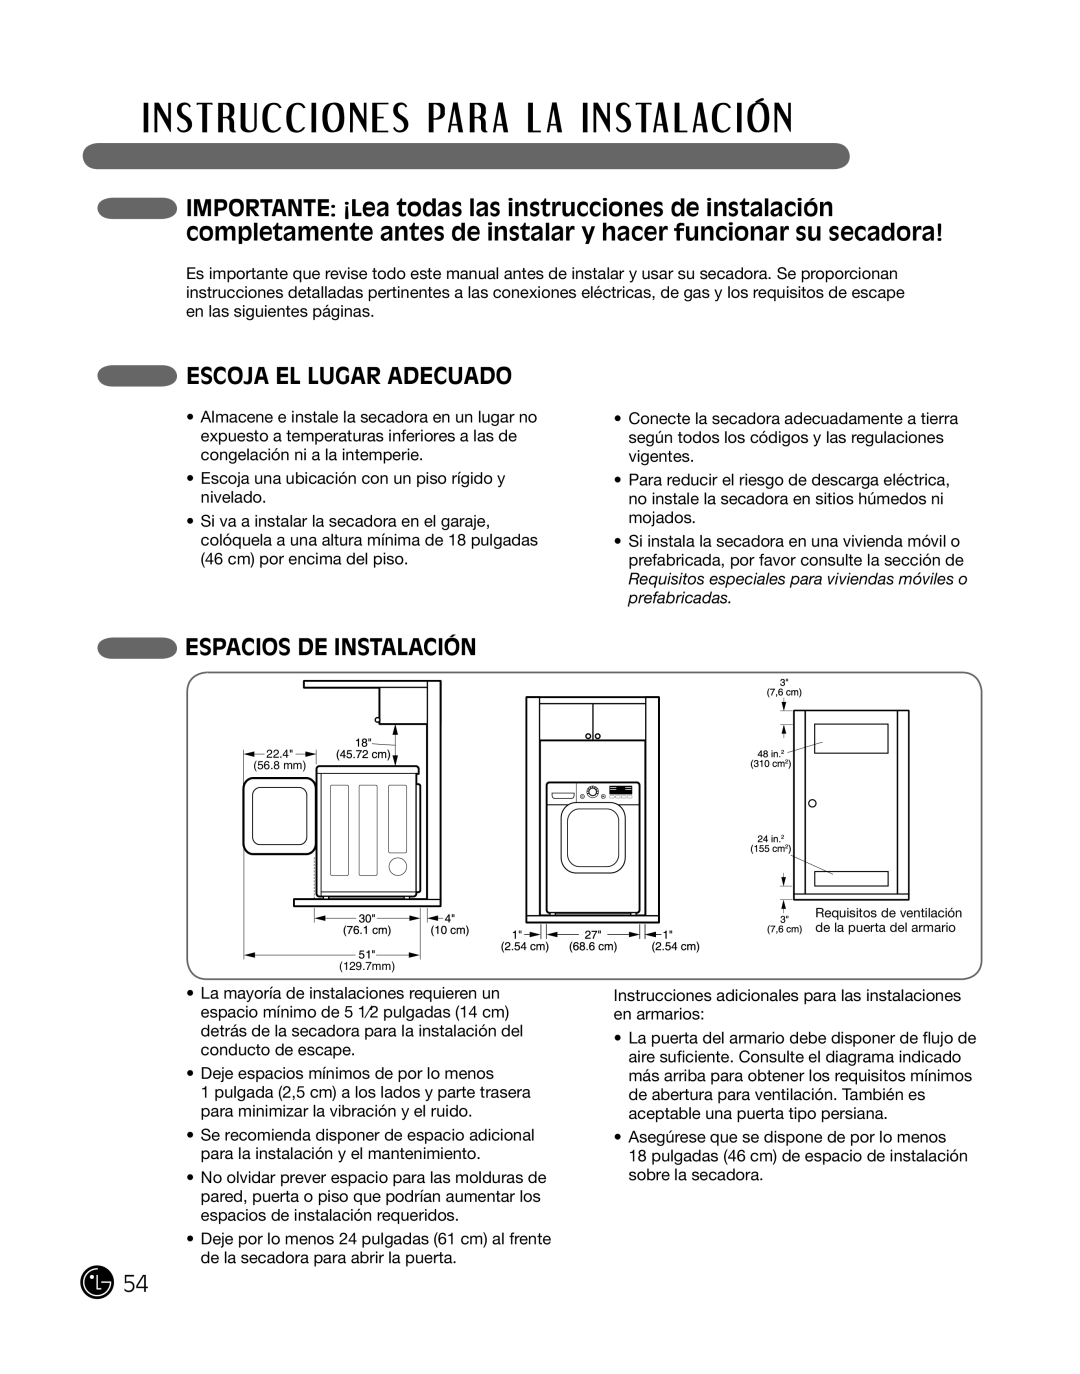 LG Electronics P154 manual eScoJa el lugar adecuado, eSPacioS de inSTalaciÓn 